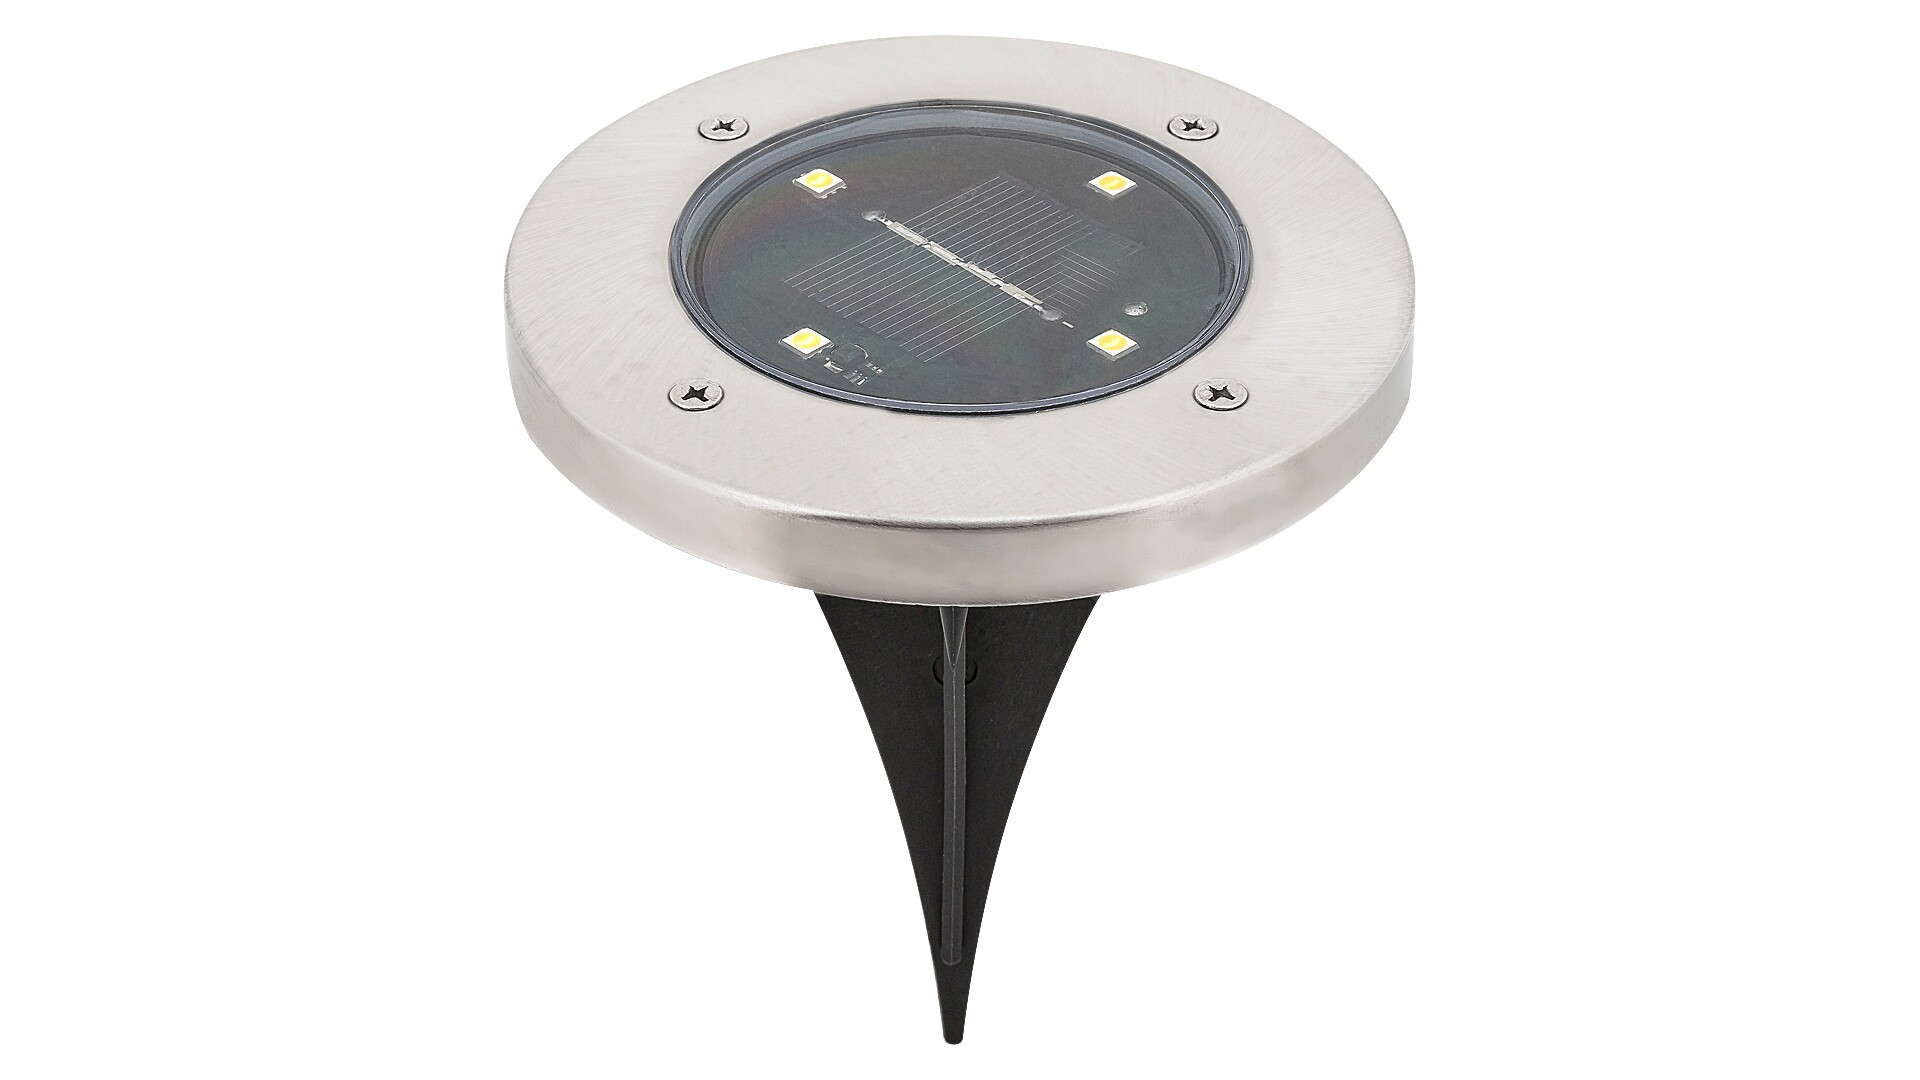 Lampa solara Dannet senzor chr/blckLED0.24 W 7975|inclus timbru verde 0.45lei